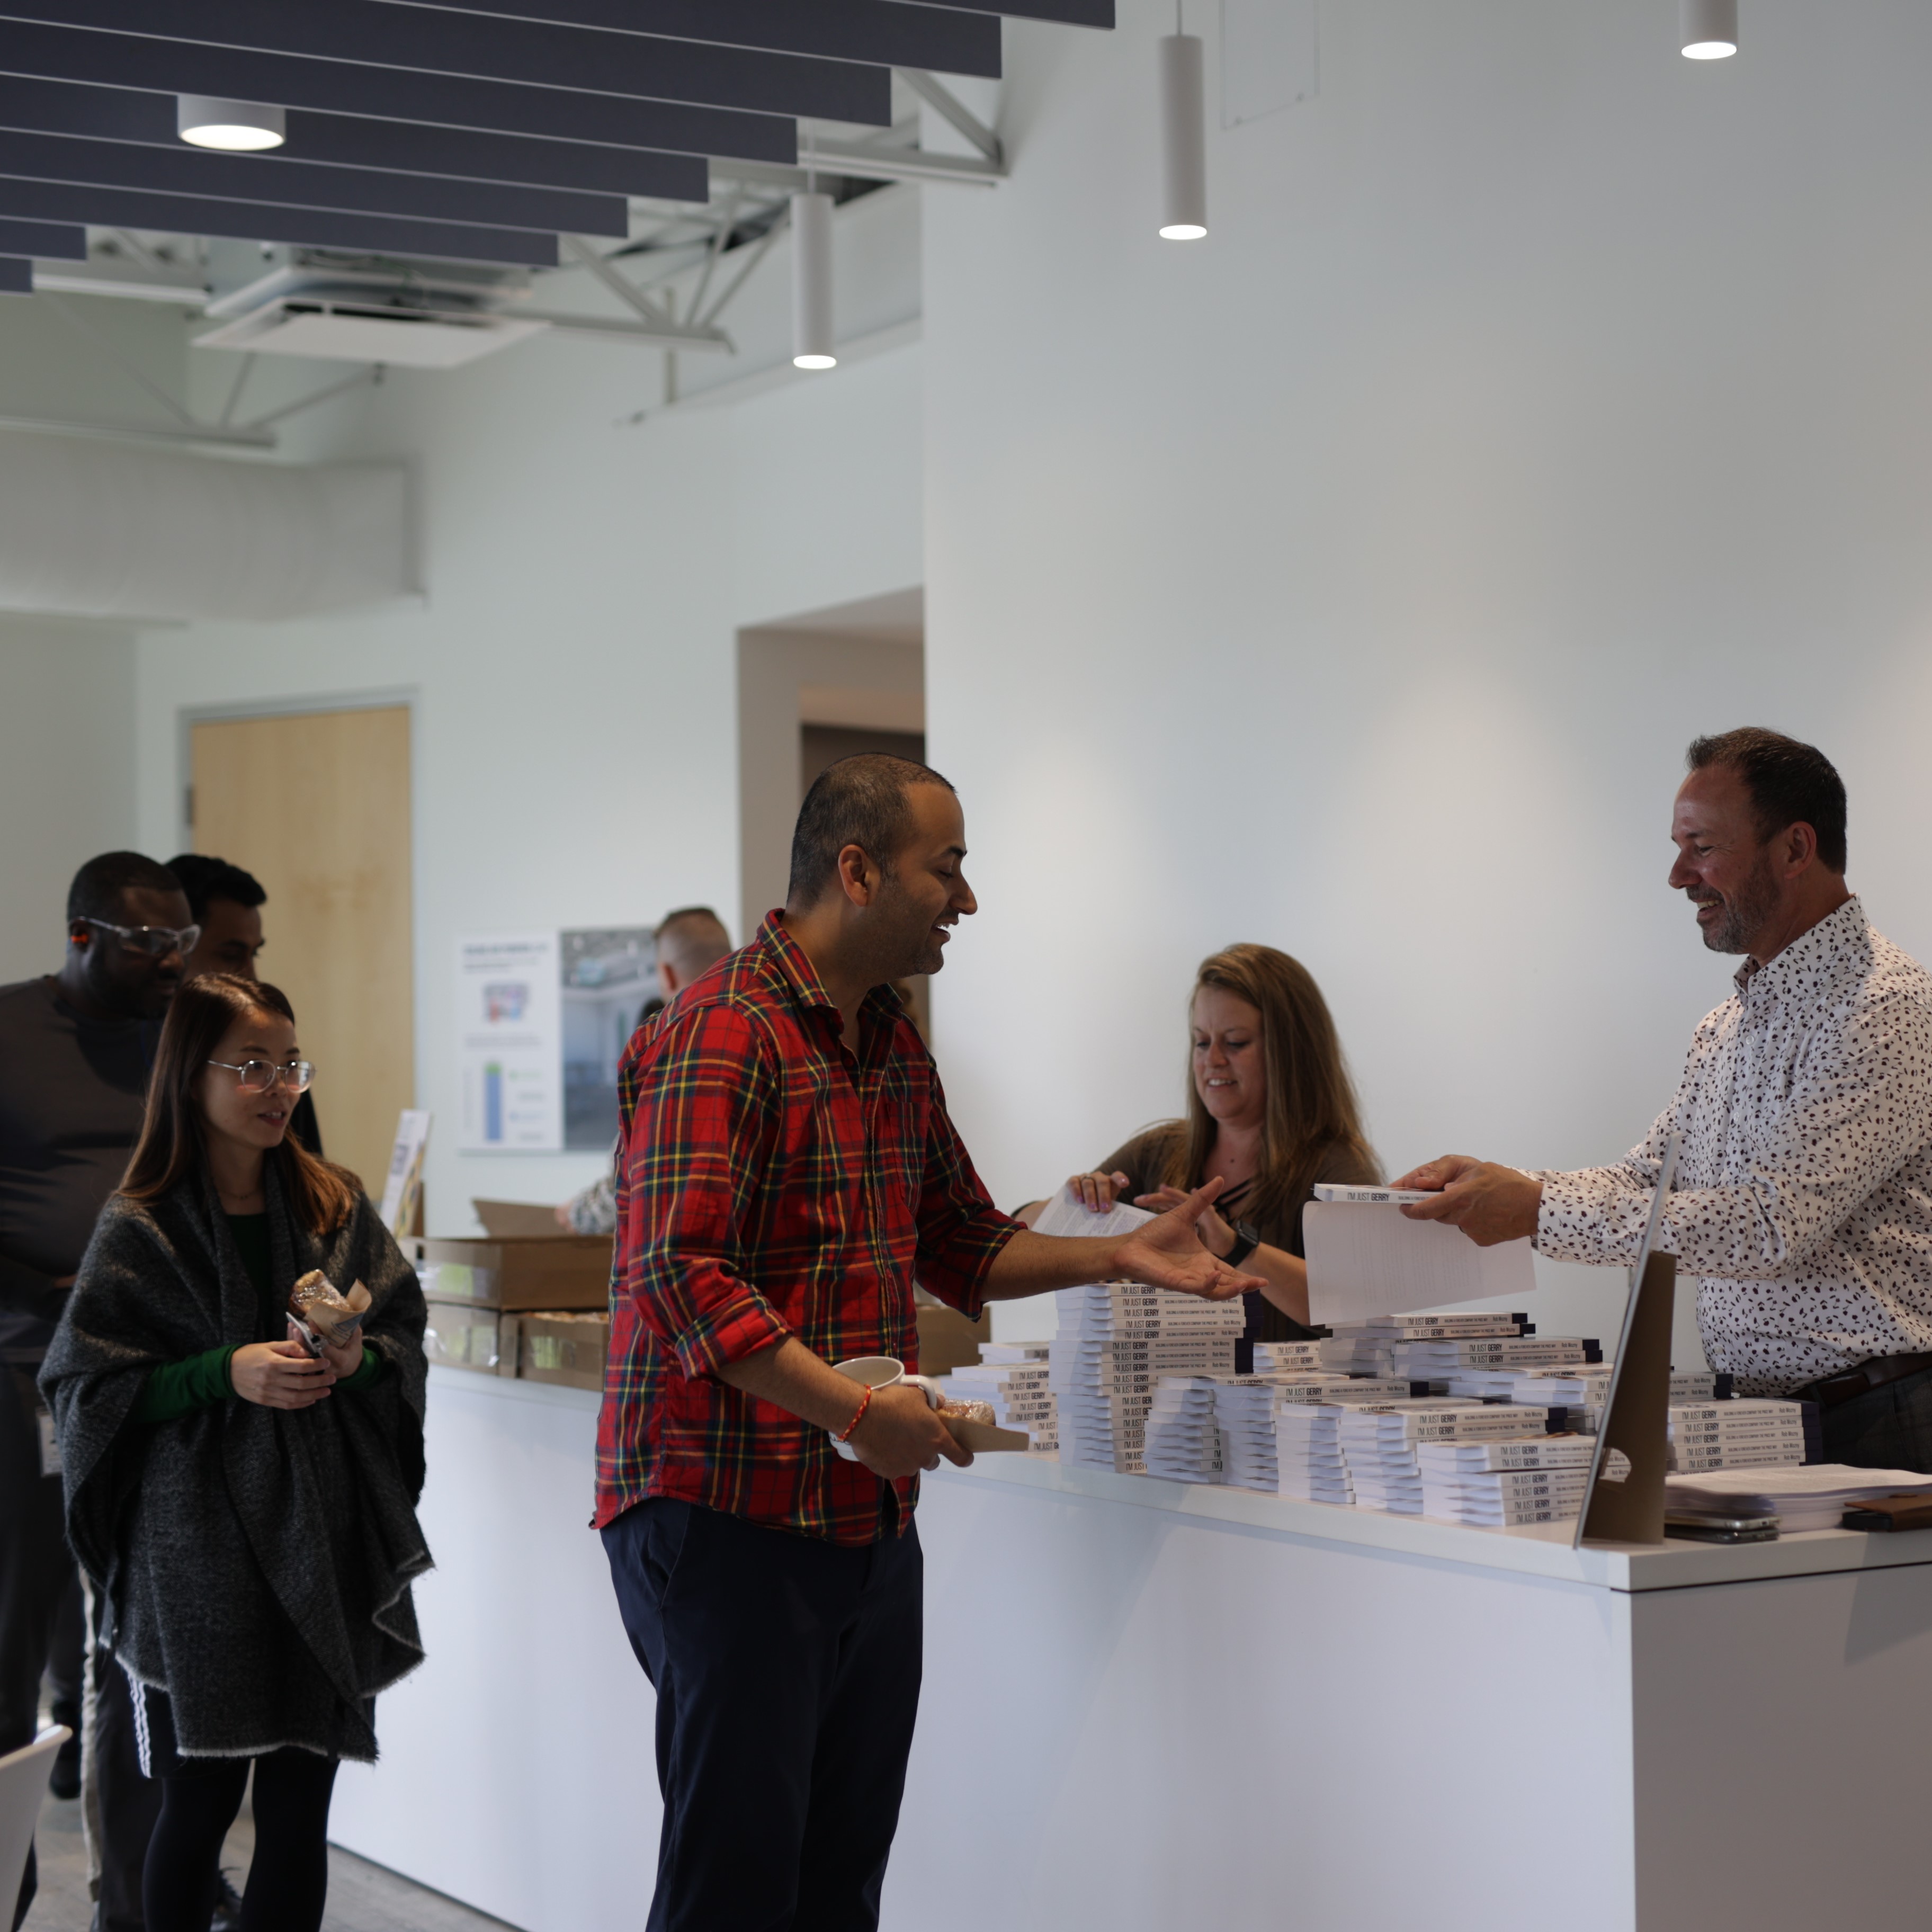 Employees receiving copies of the book in Winnipeg